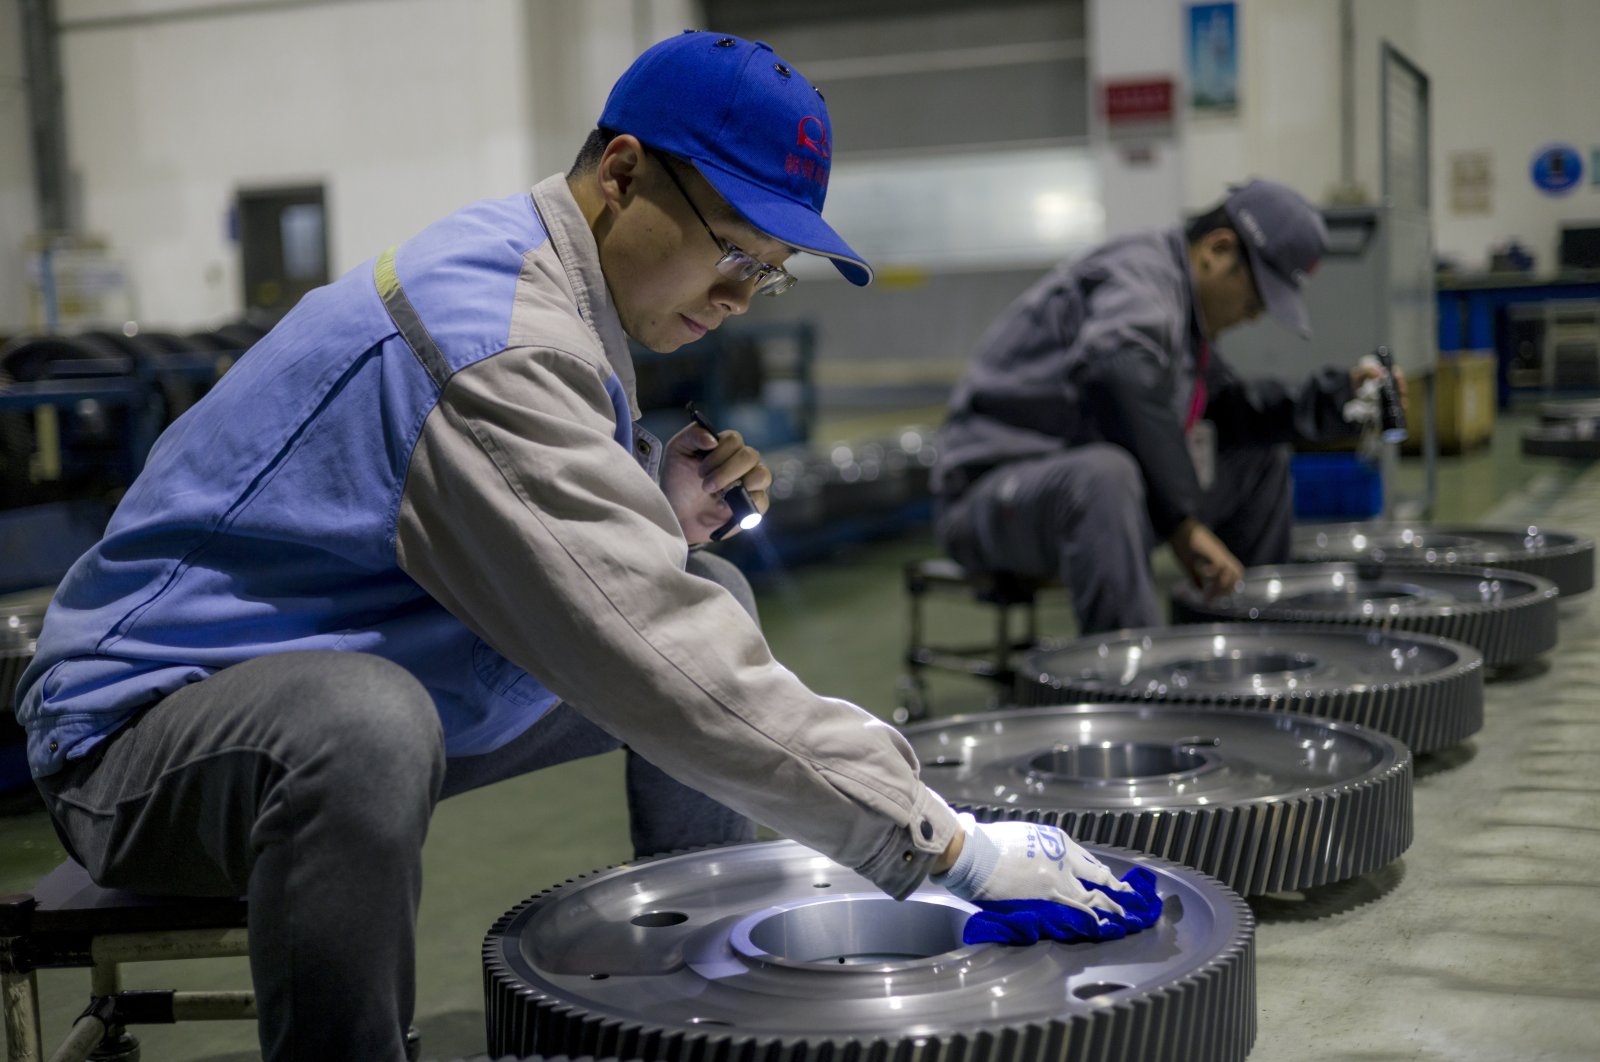 People work in a locomotive factory, in Changzhou, Jiangsu province, China, Dec. 7, 2021. (EPA Photo)